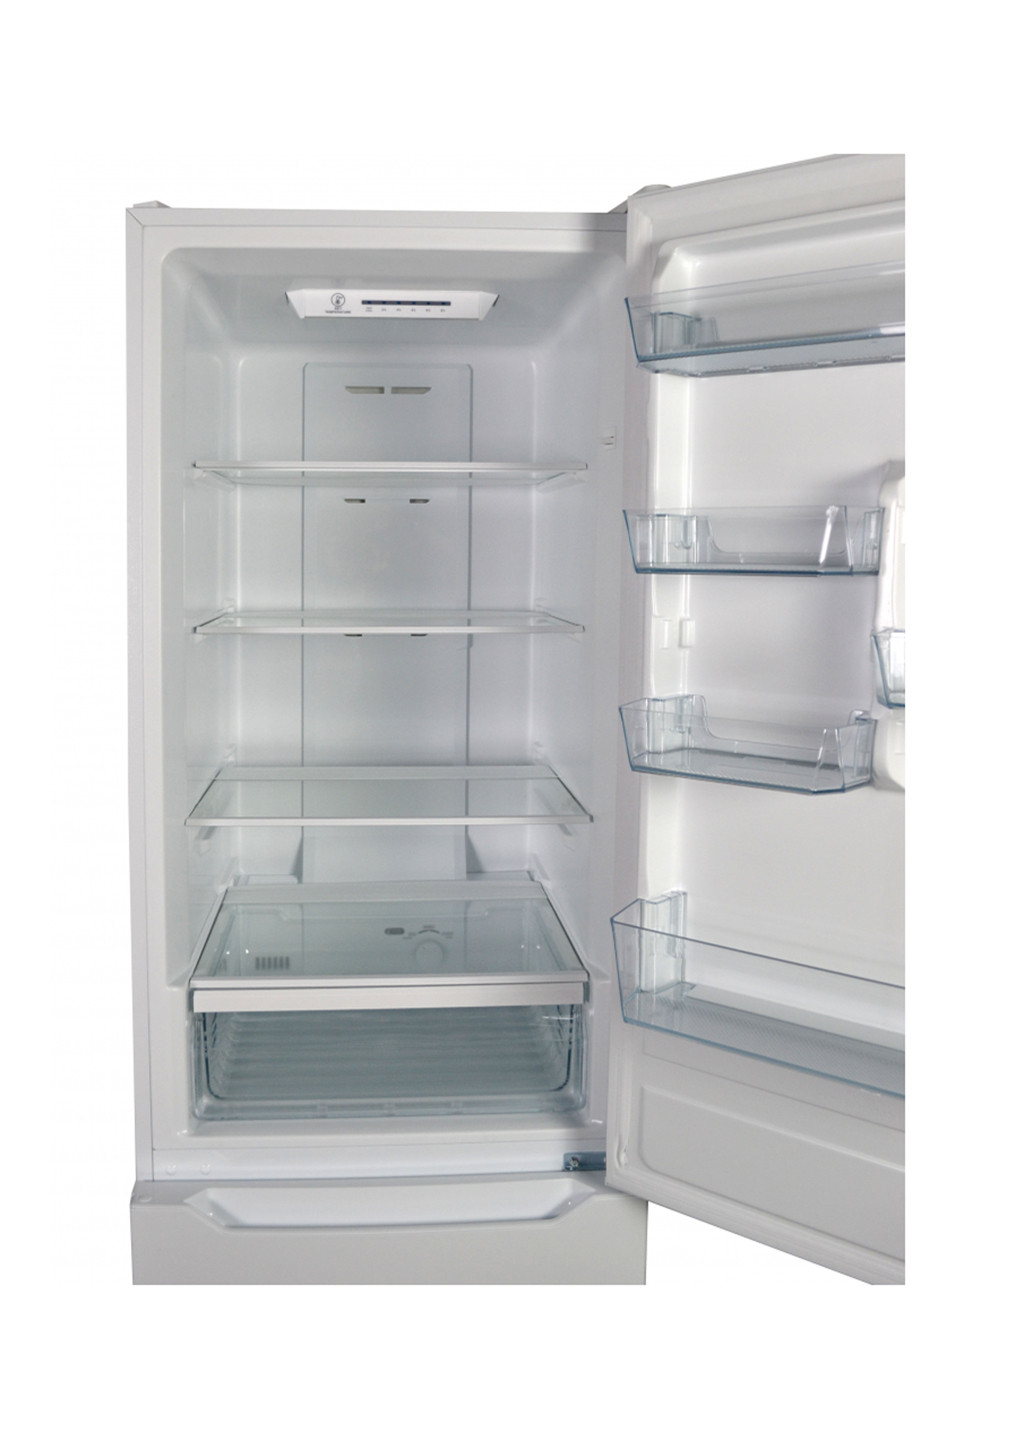 Холодильник комби Grunhelm GNC-188M